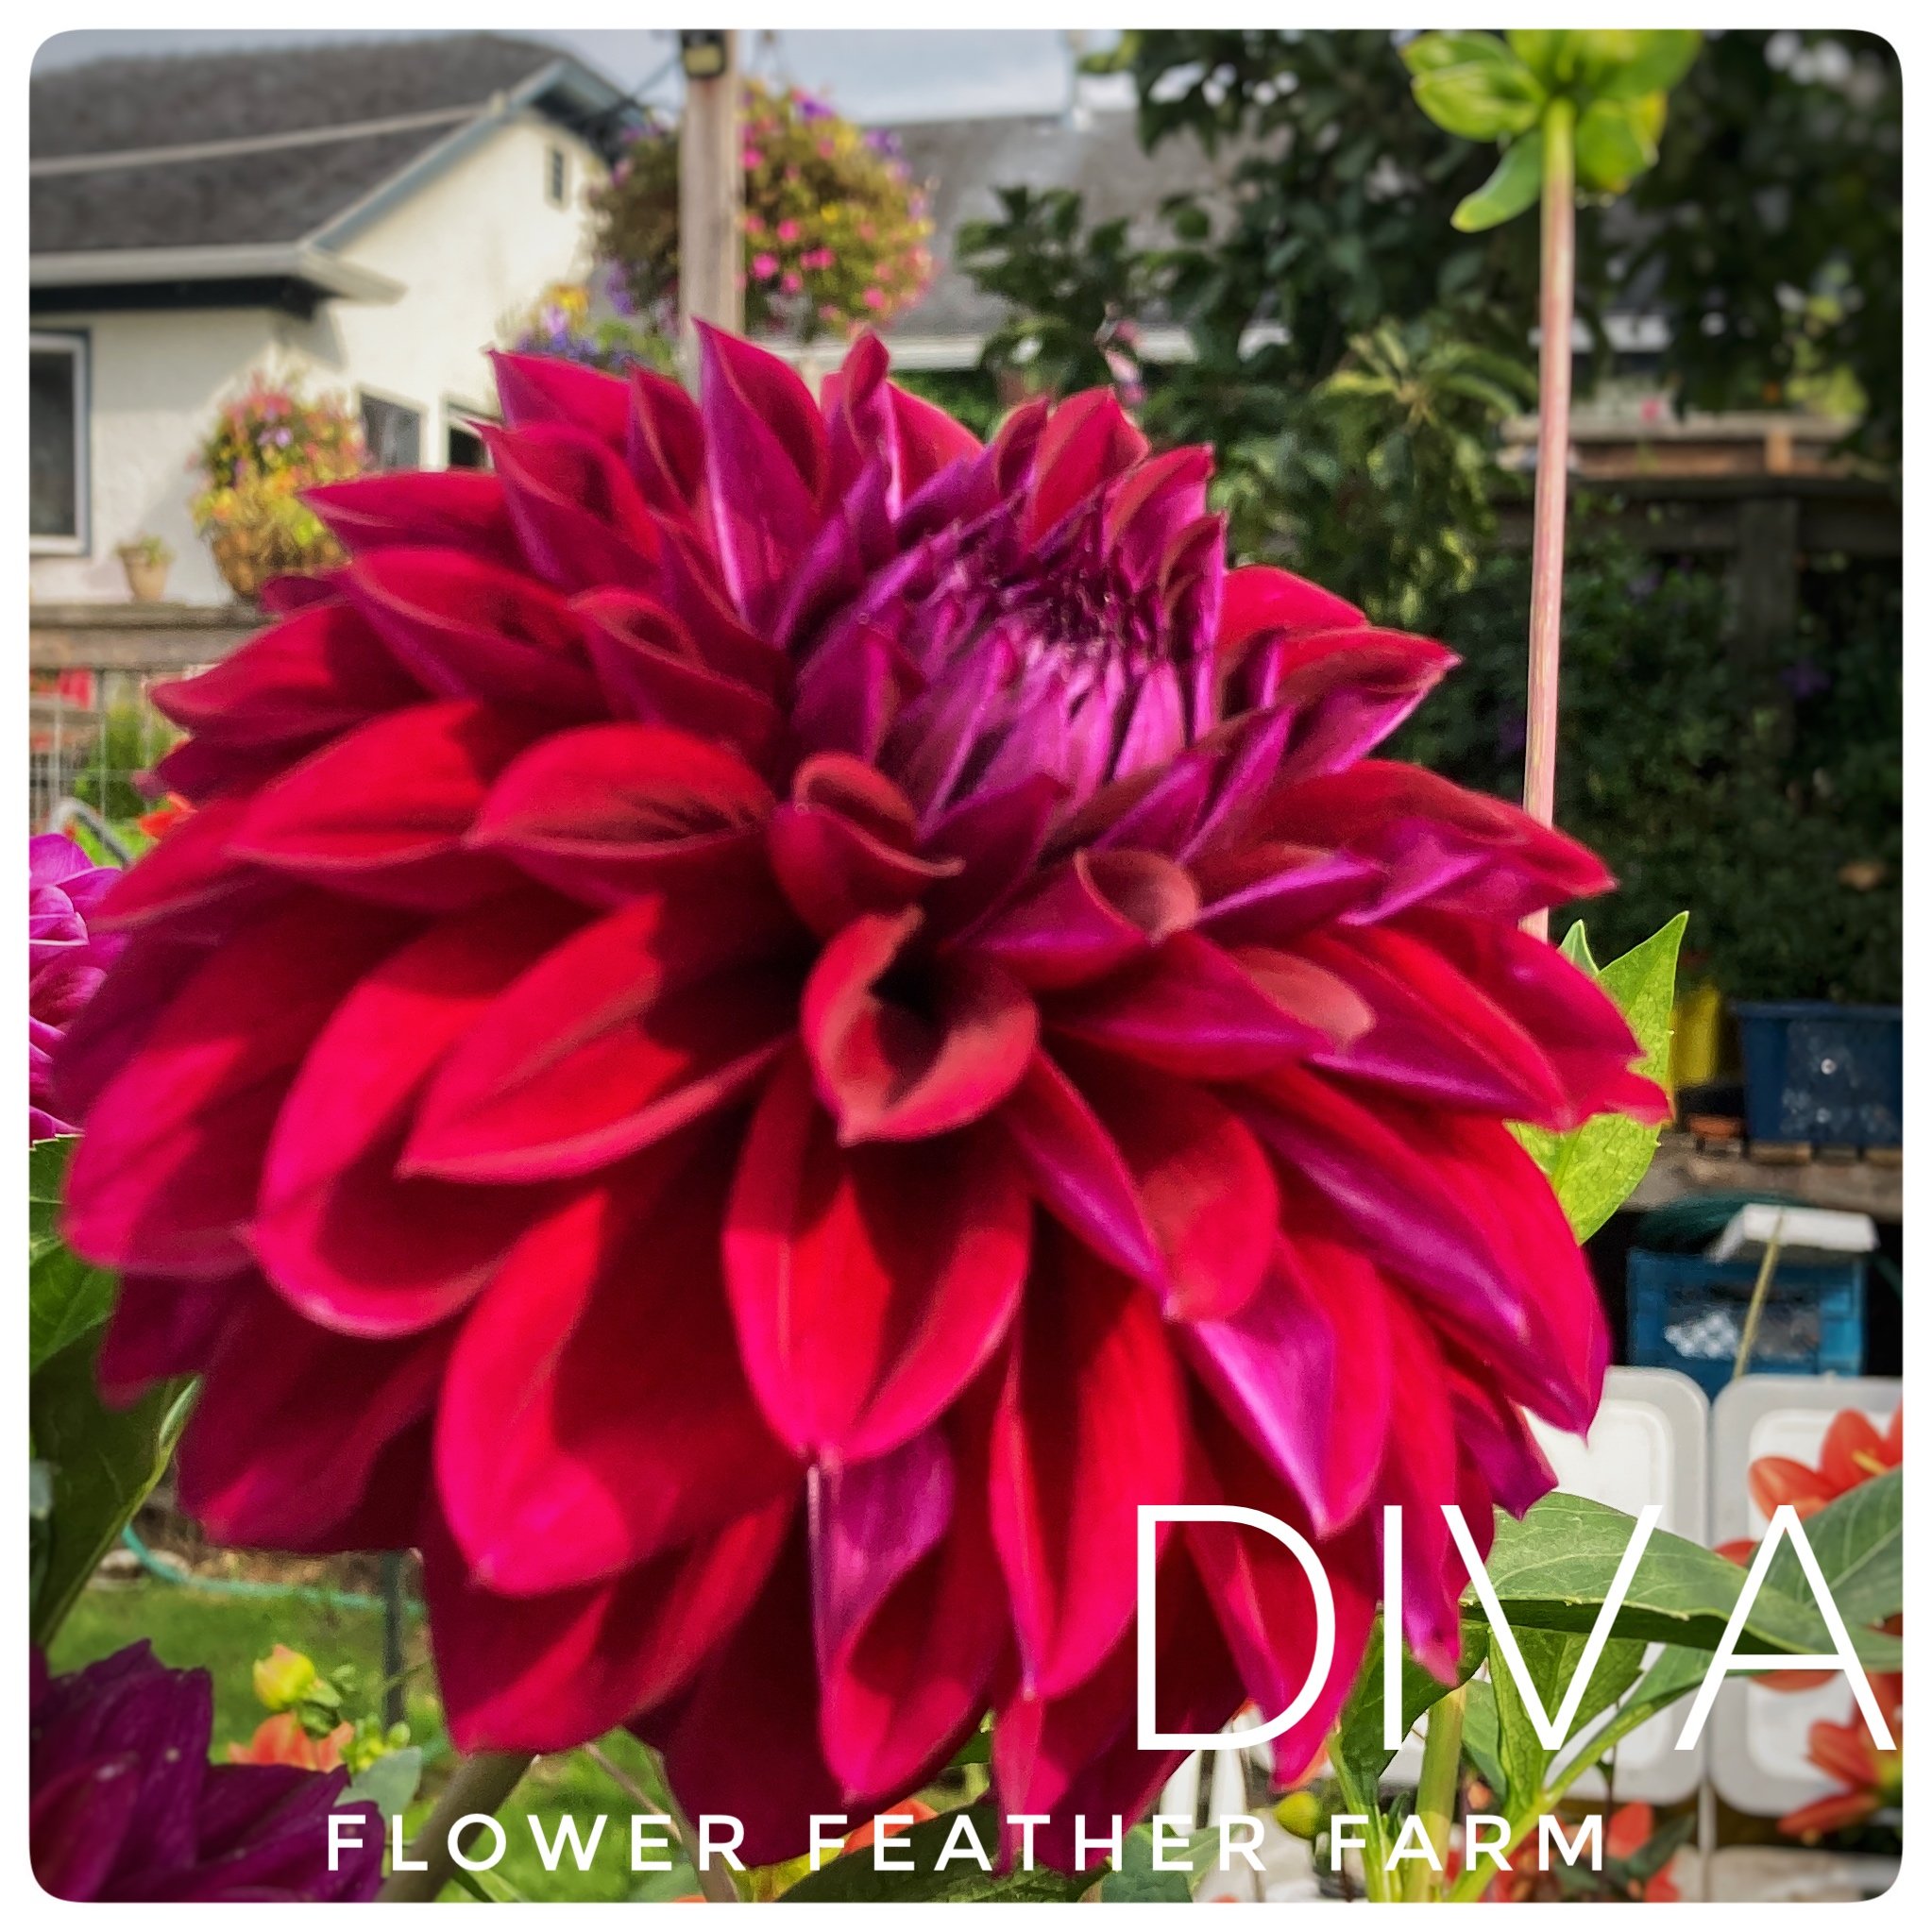 Diva Dahlia at Flower Feather Farm, chicks and dahlias